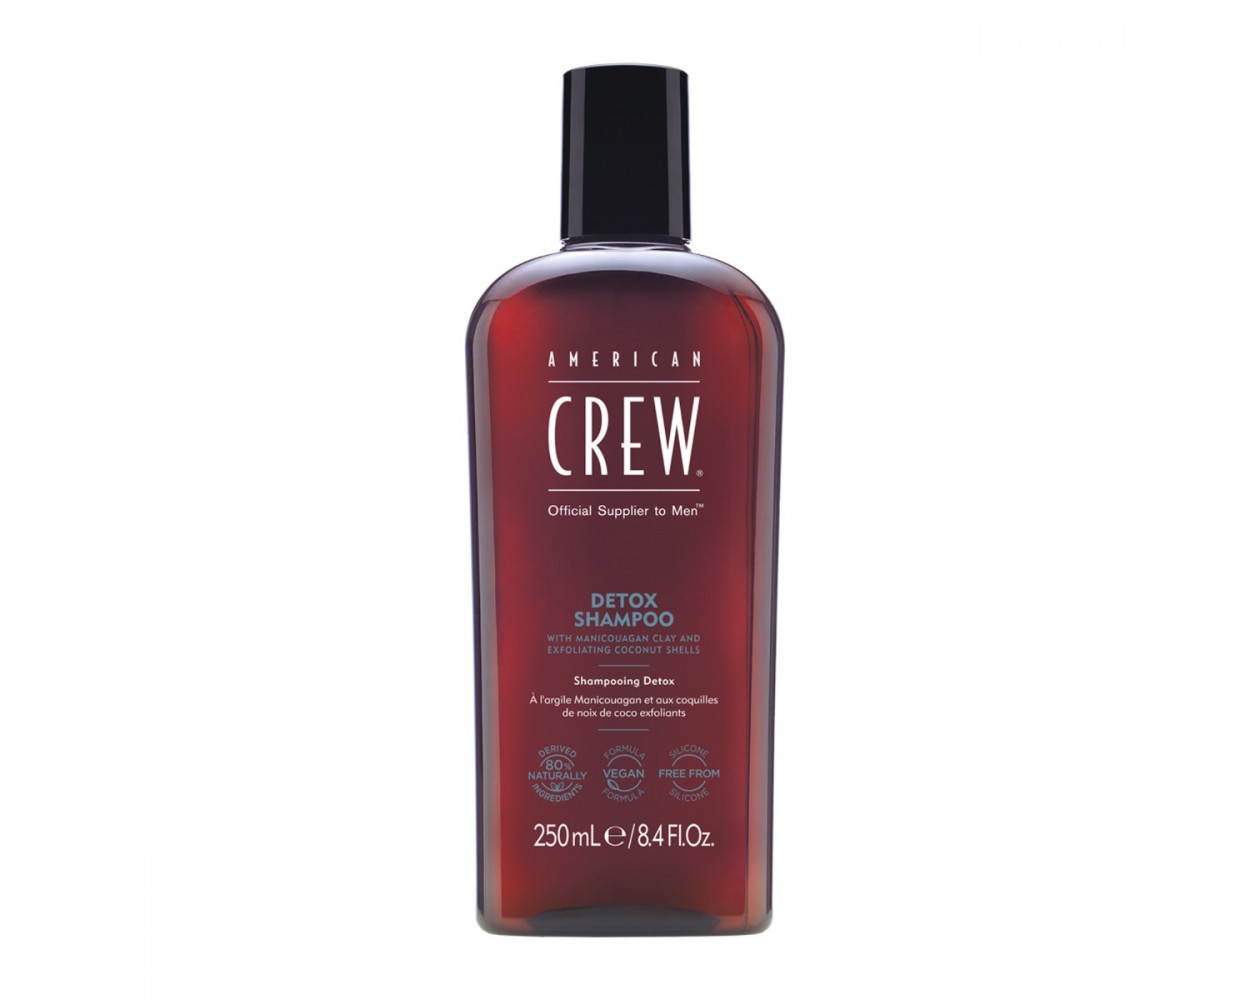 American Crew Detox Style Remover Shampoo 250ml - Salon Warehouse